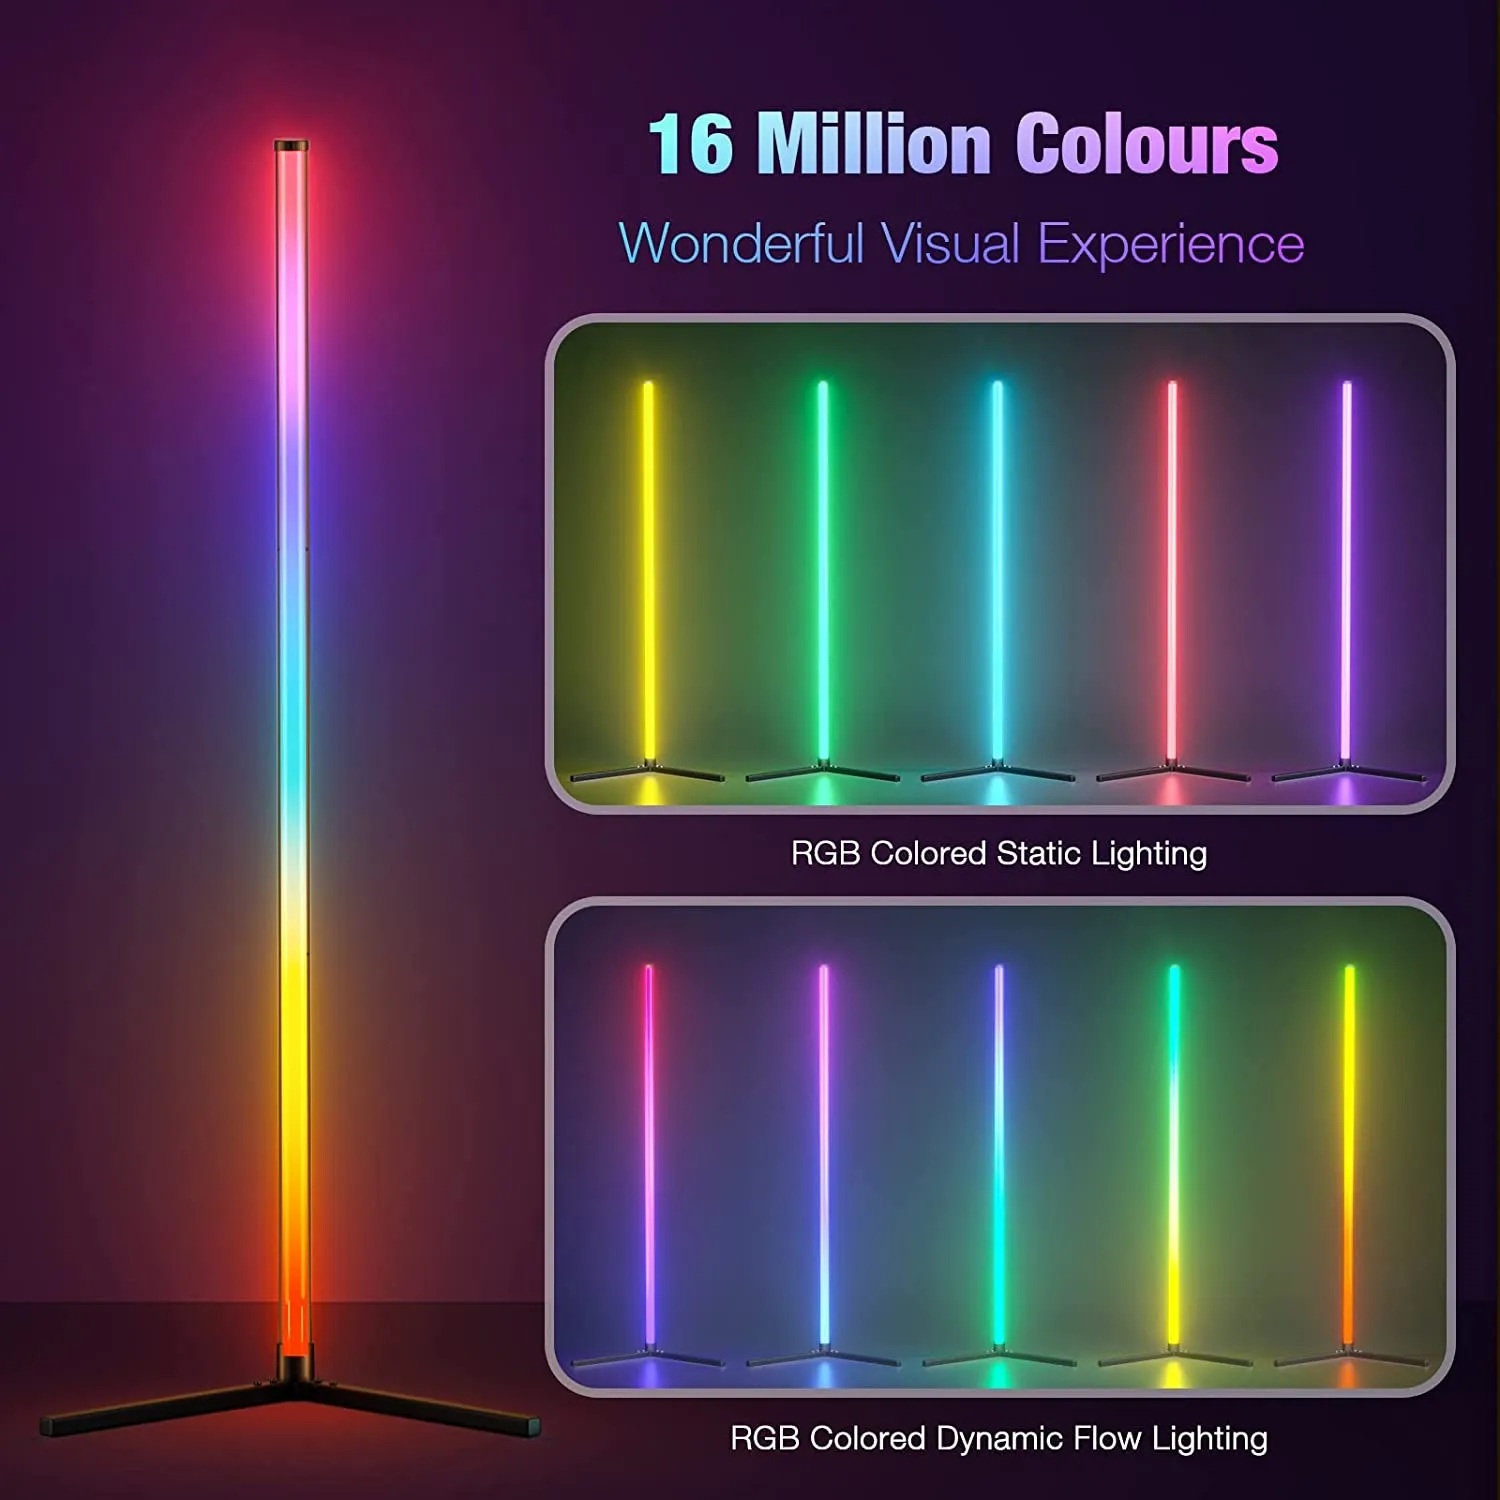 Akıllı RGB rüya renk zemin lambası müzik senkronizasyonu modern 16 milyon renk değiştiren ayakta duran ruh hali ışığı Uzaktan kumanda